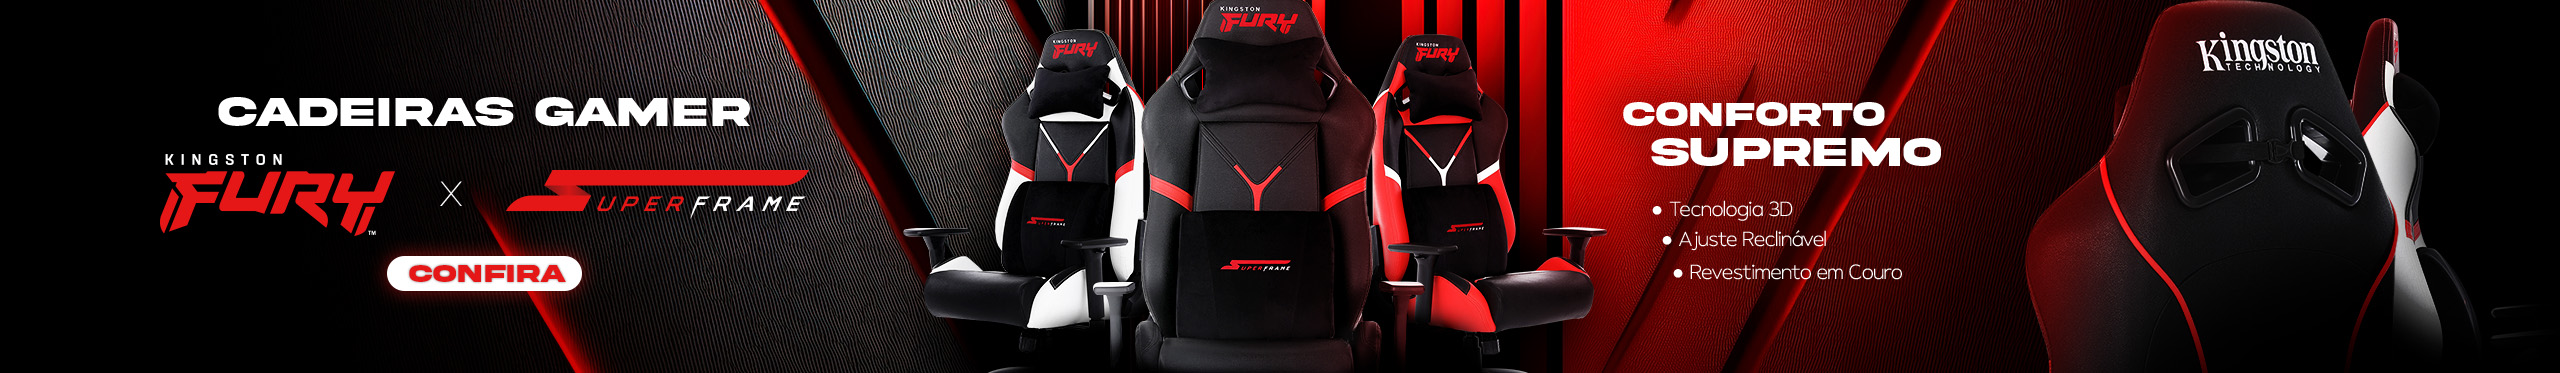 Cadeiras Gamer SuperFrame Kingston Fury | O conforto supremo. Clica!